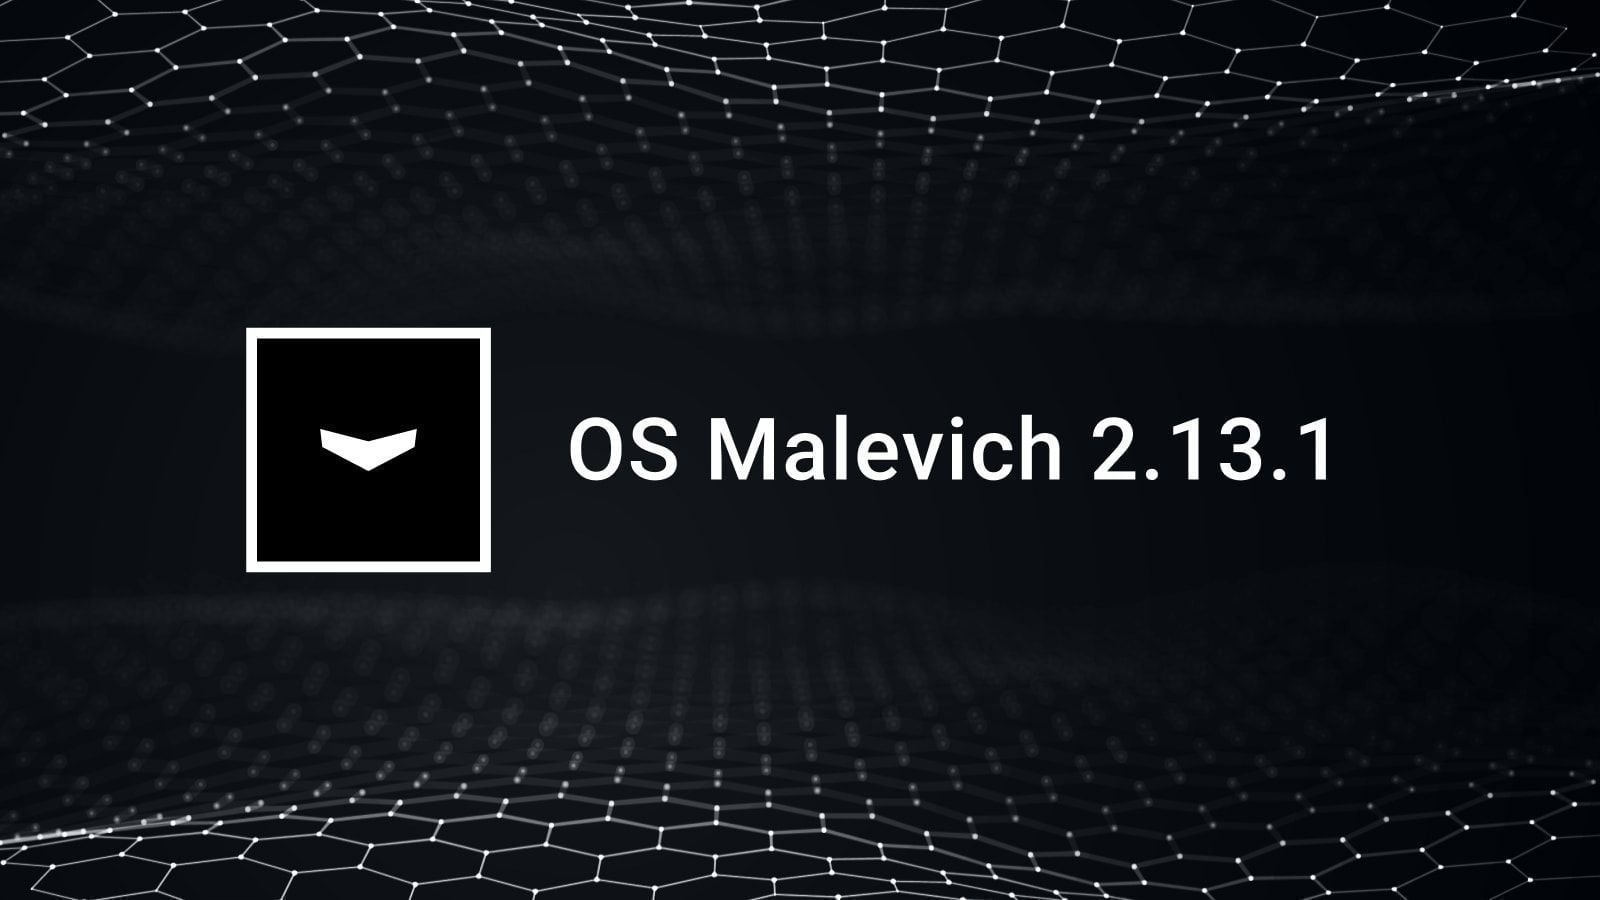 OS Malevich 2.13.1: Toegangscodes voor keypads zonder een gebruiker te registreren